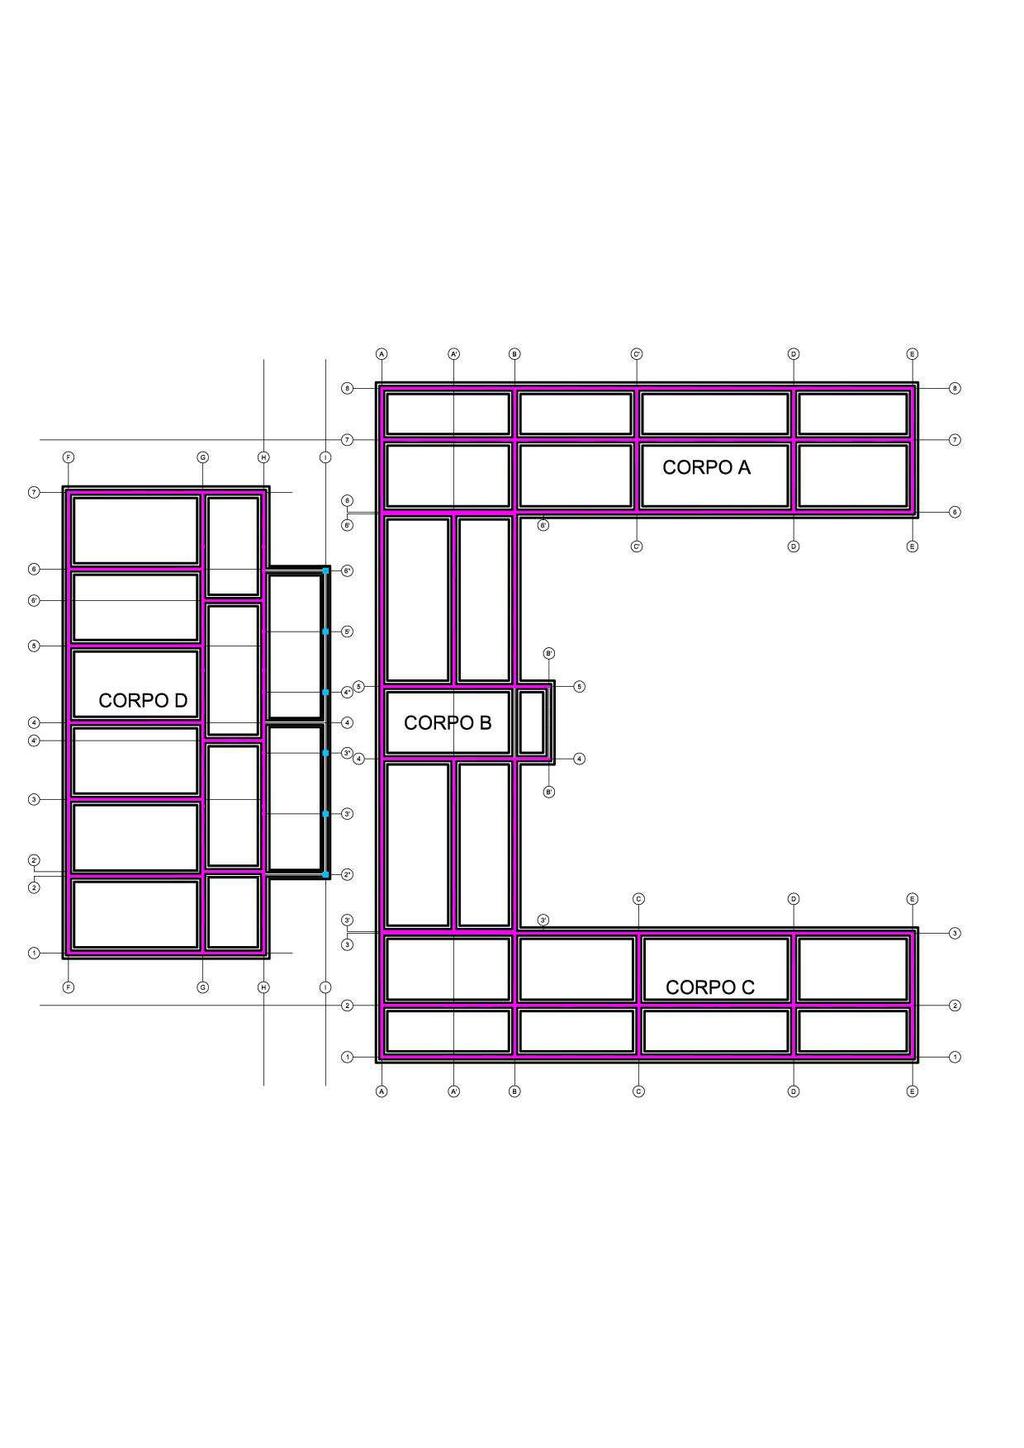 Pareti portanti perimetrali esterne ed interne in pannelli in legno di compensato di tavole incrociate (tipo x-lam o CLT), spessore 100mm a tre strati, con tavole di ripartizione in corrispondenza